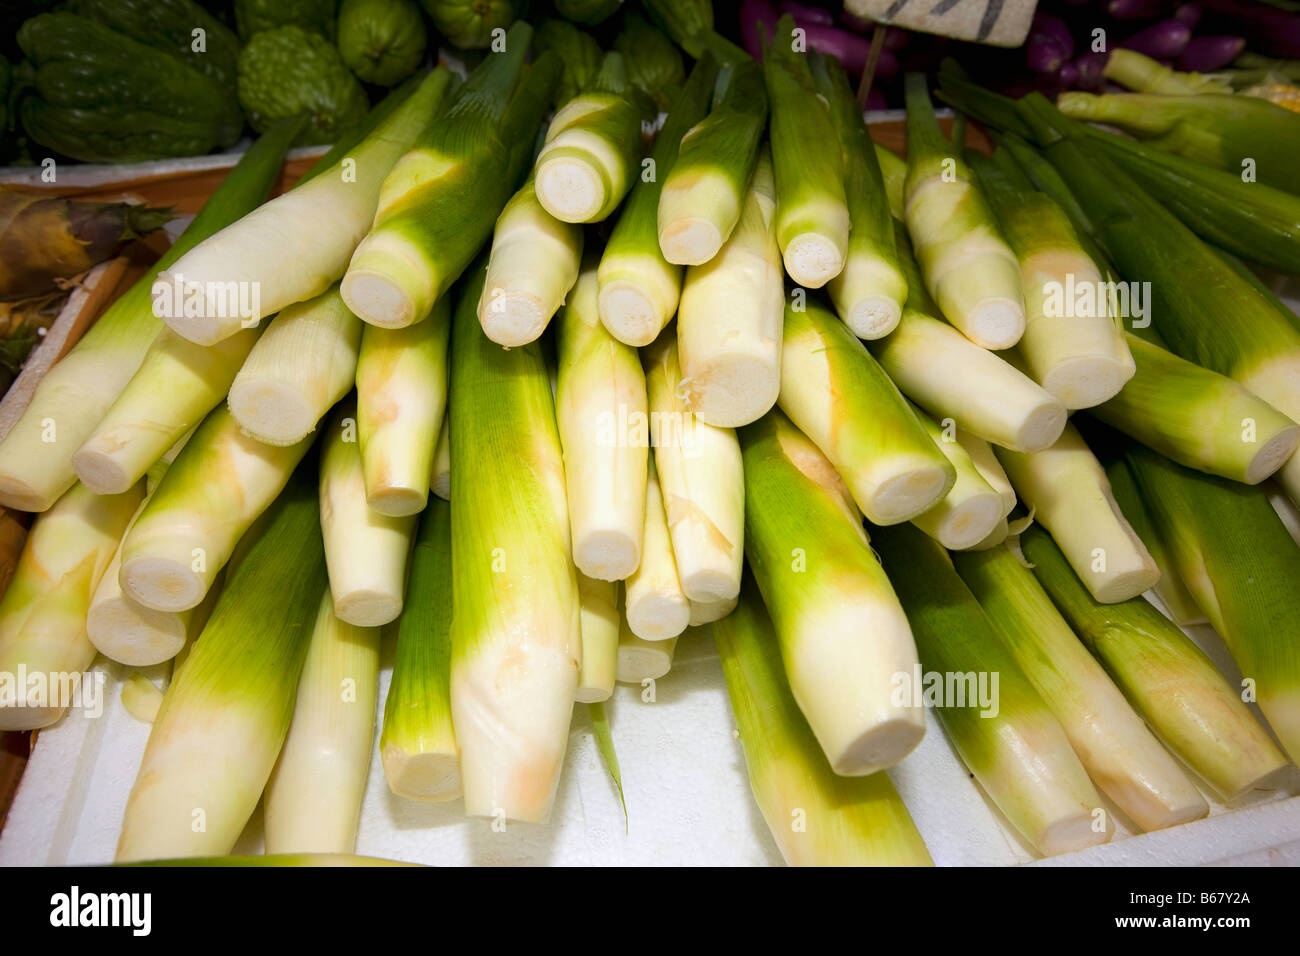 Close-up of celery stalks at a market stall, Hong Kong Island, Hong Kong, China Stock Photo